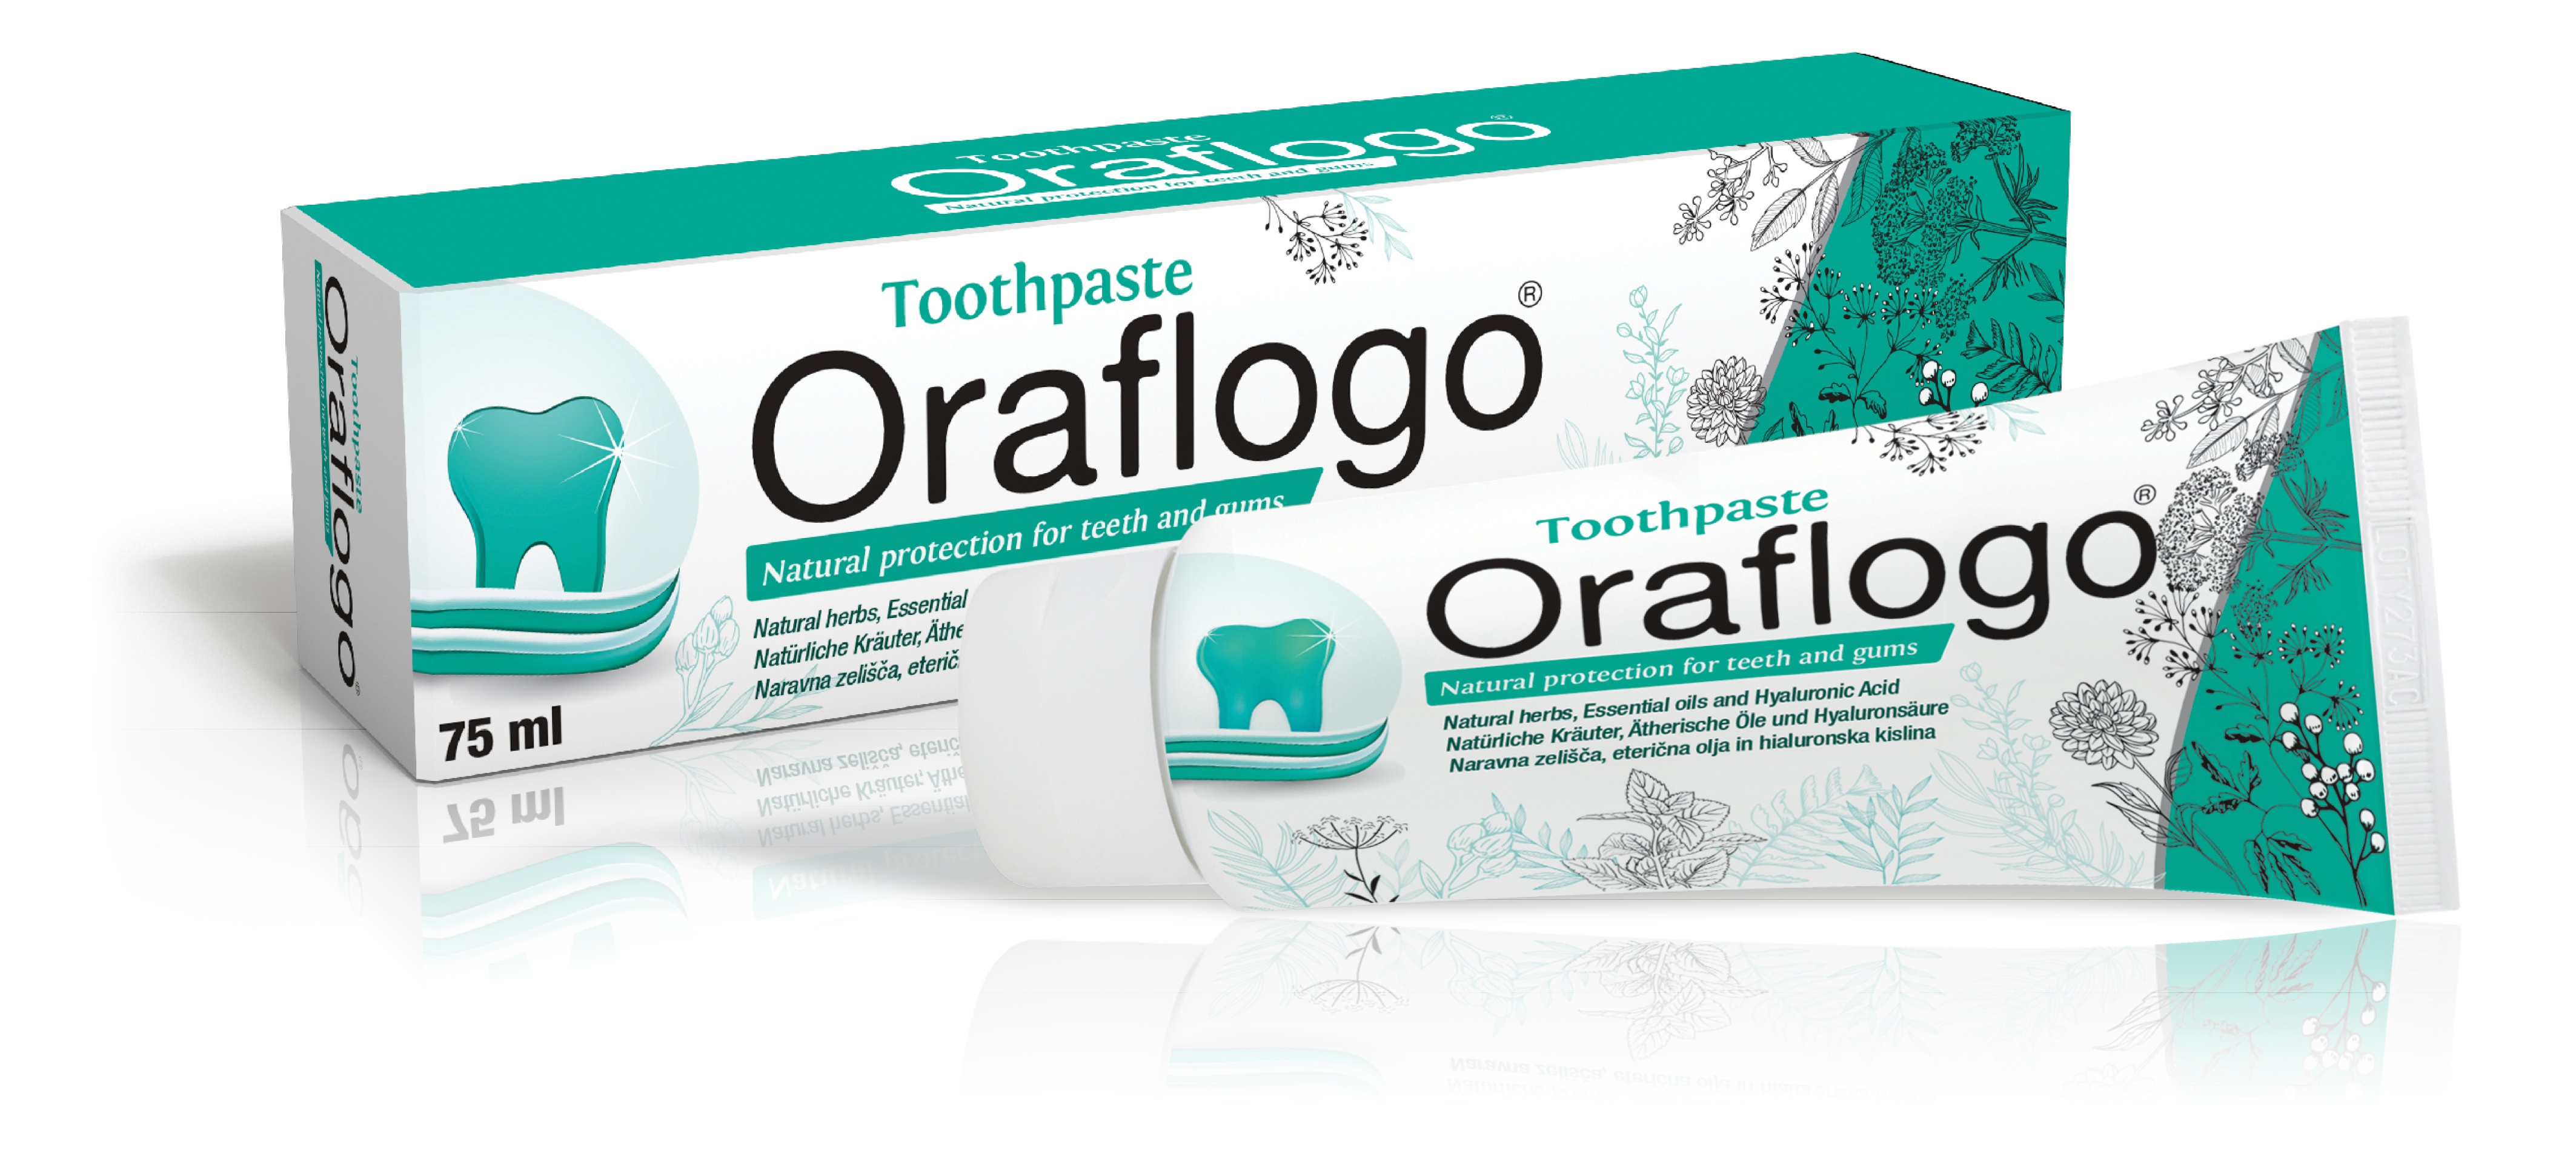 Oraflogo Toothpaste